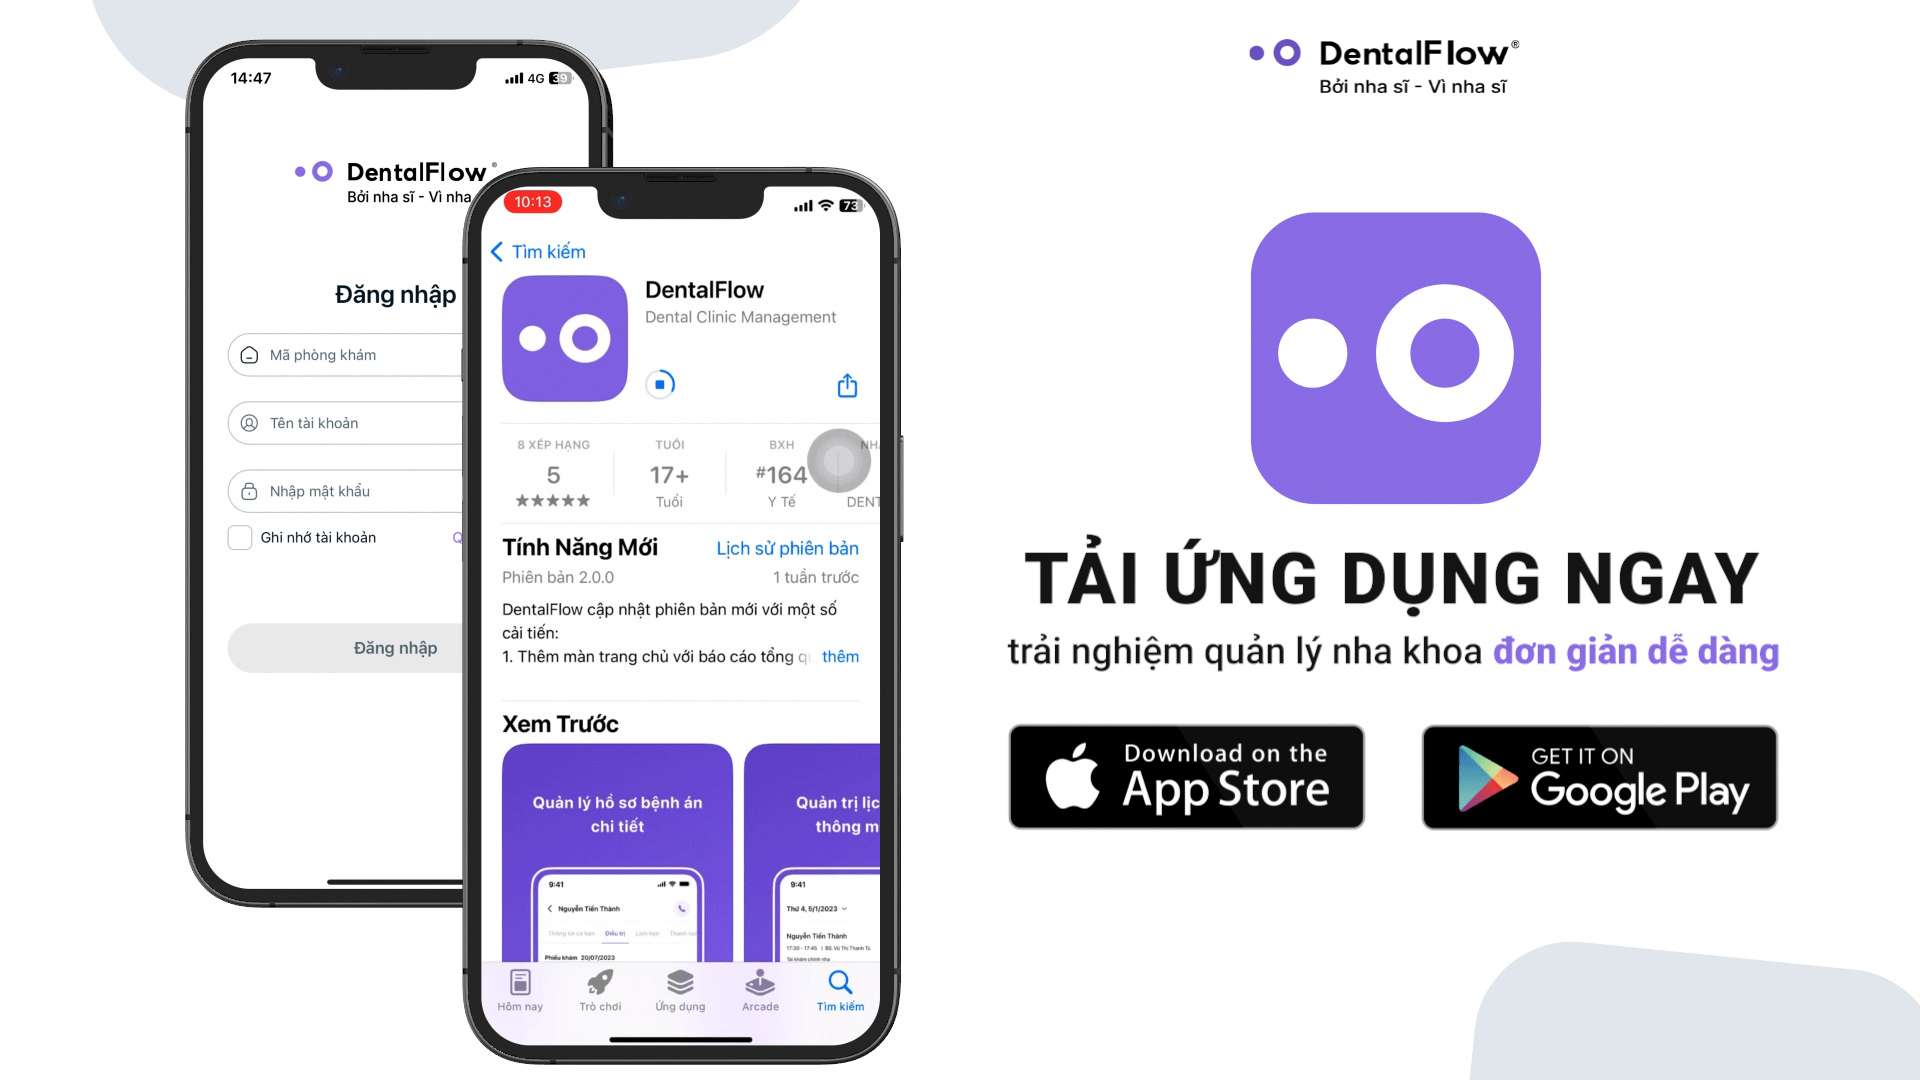 DentalFlow Mobile 2.0 chính thức có mặt trên App Store và CH Play